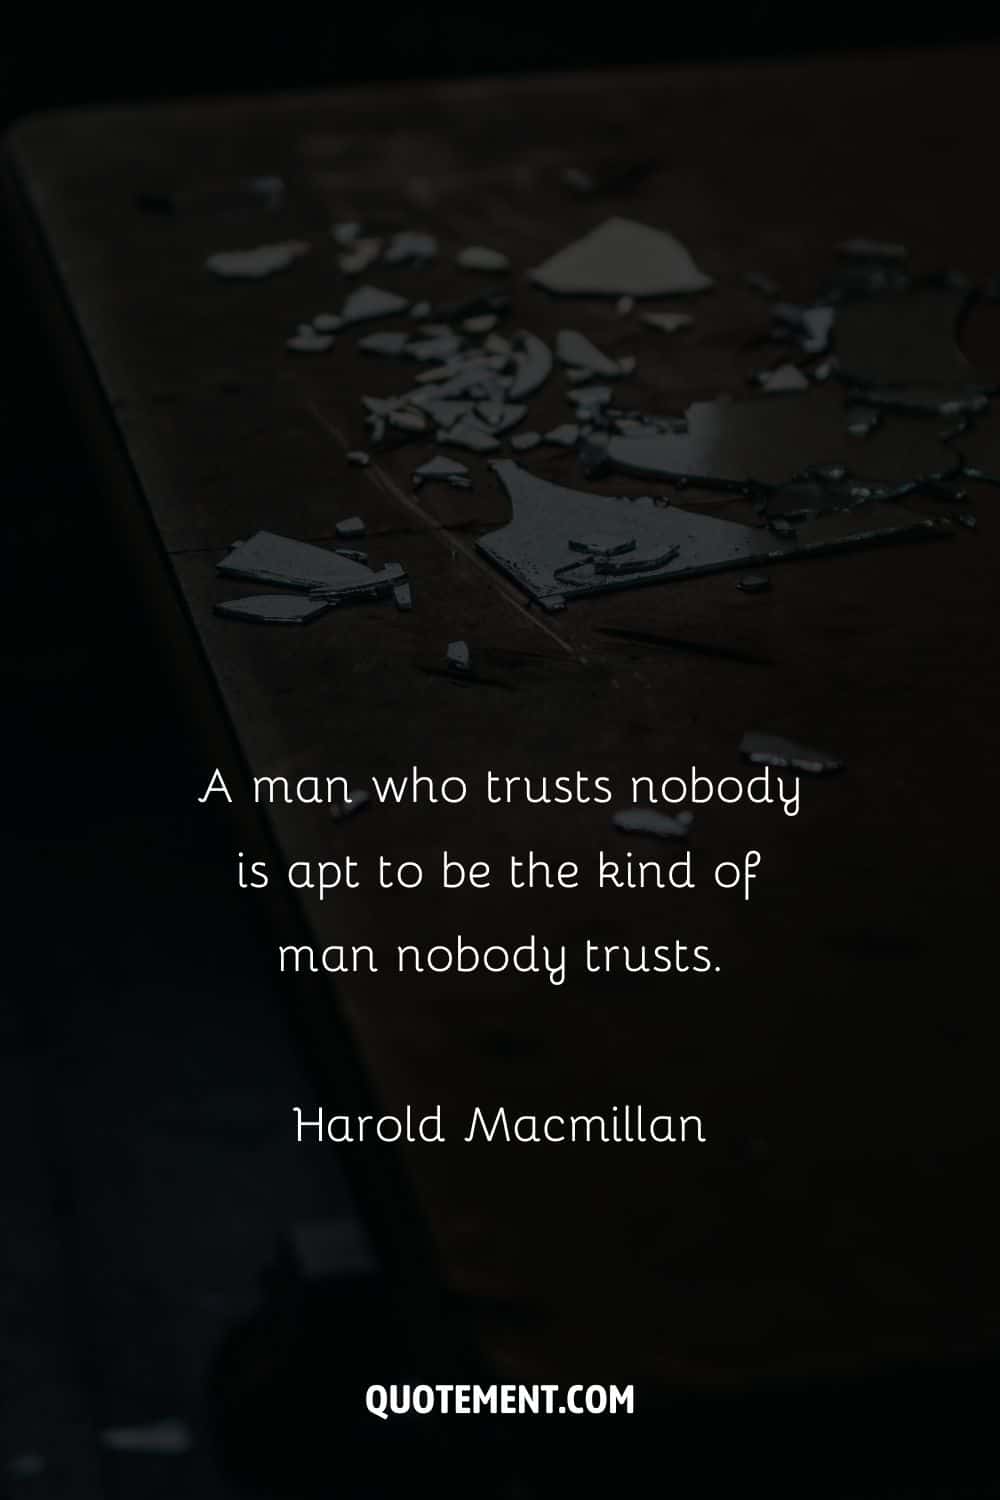 image of a broken glass representing top broken trust quote